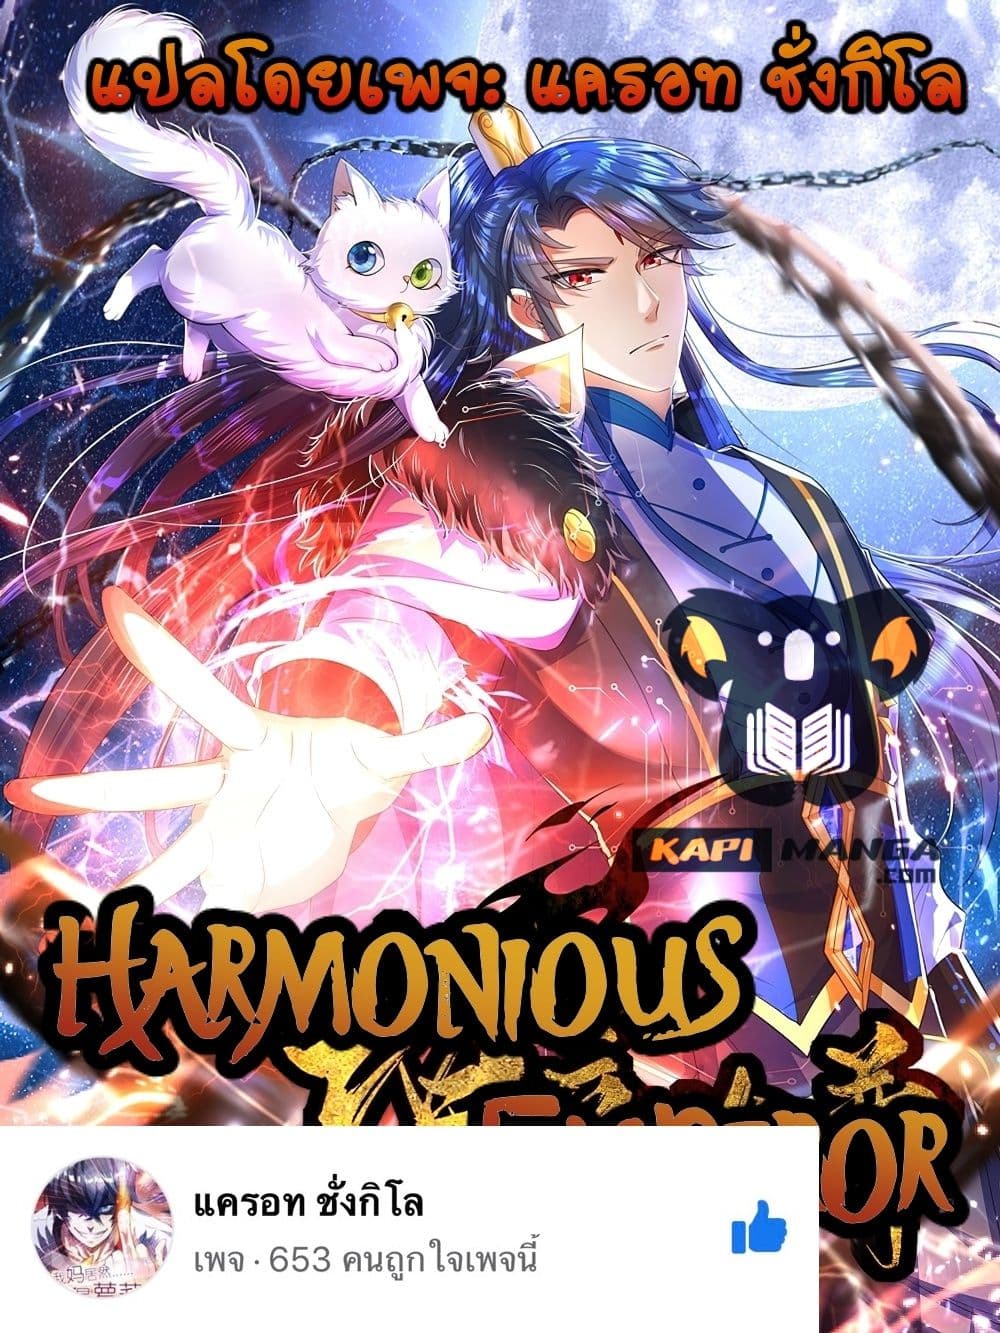 Harmonious Emperor is respected 99 01